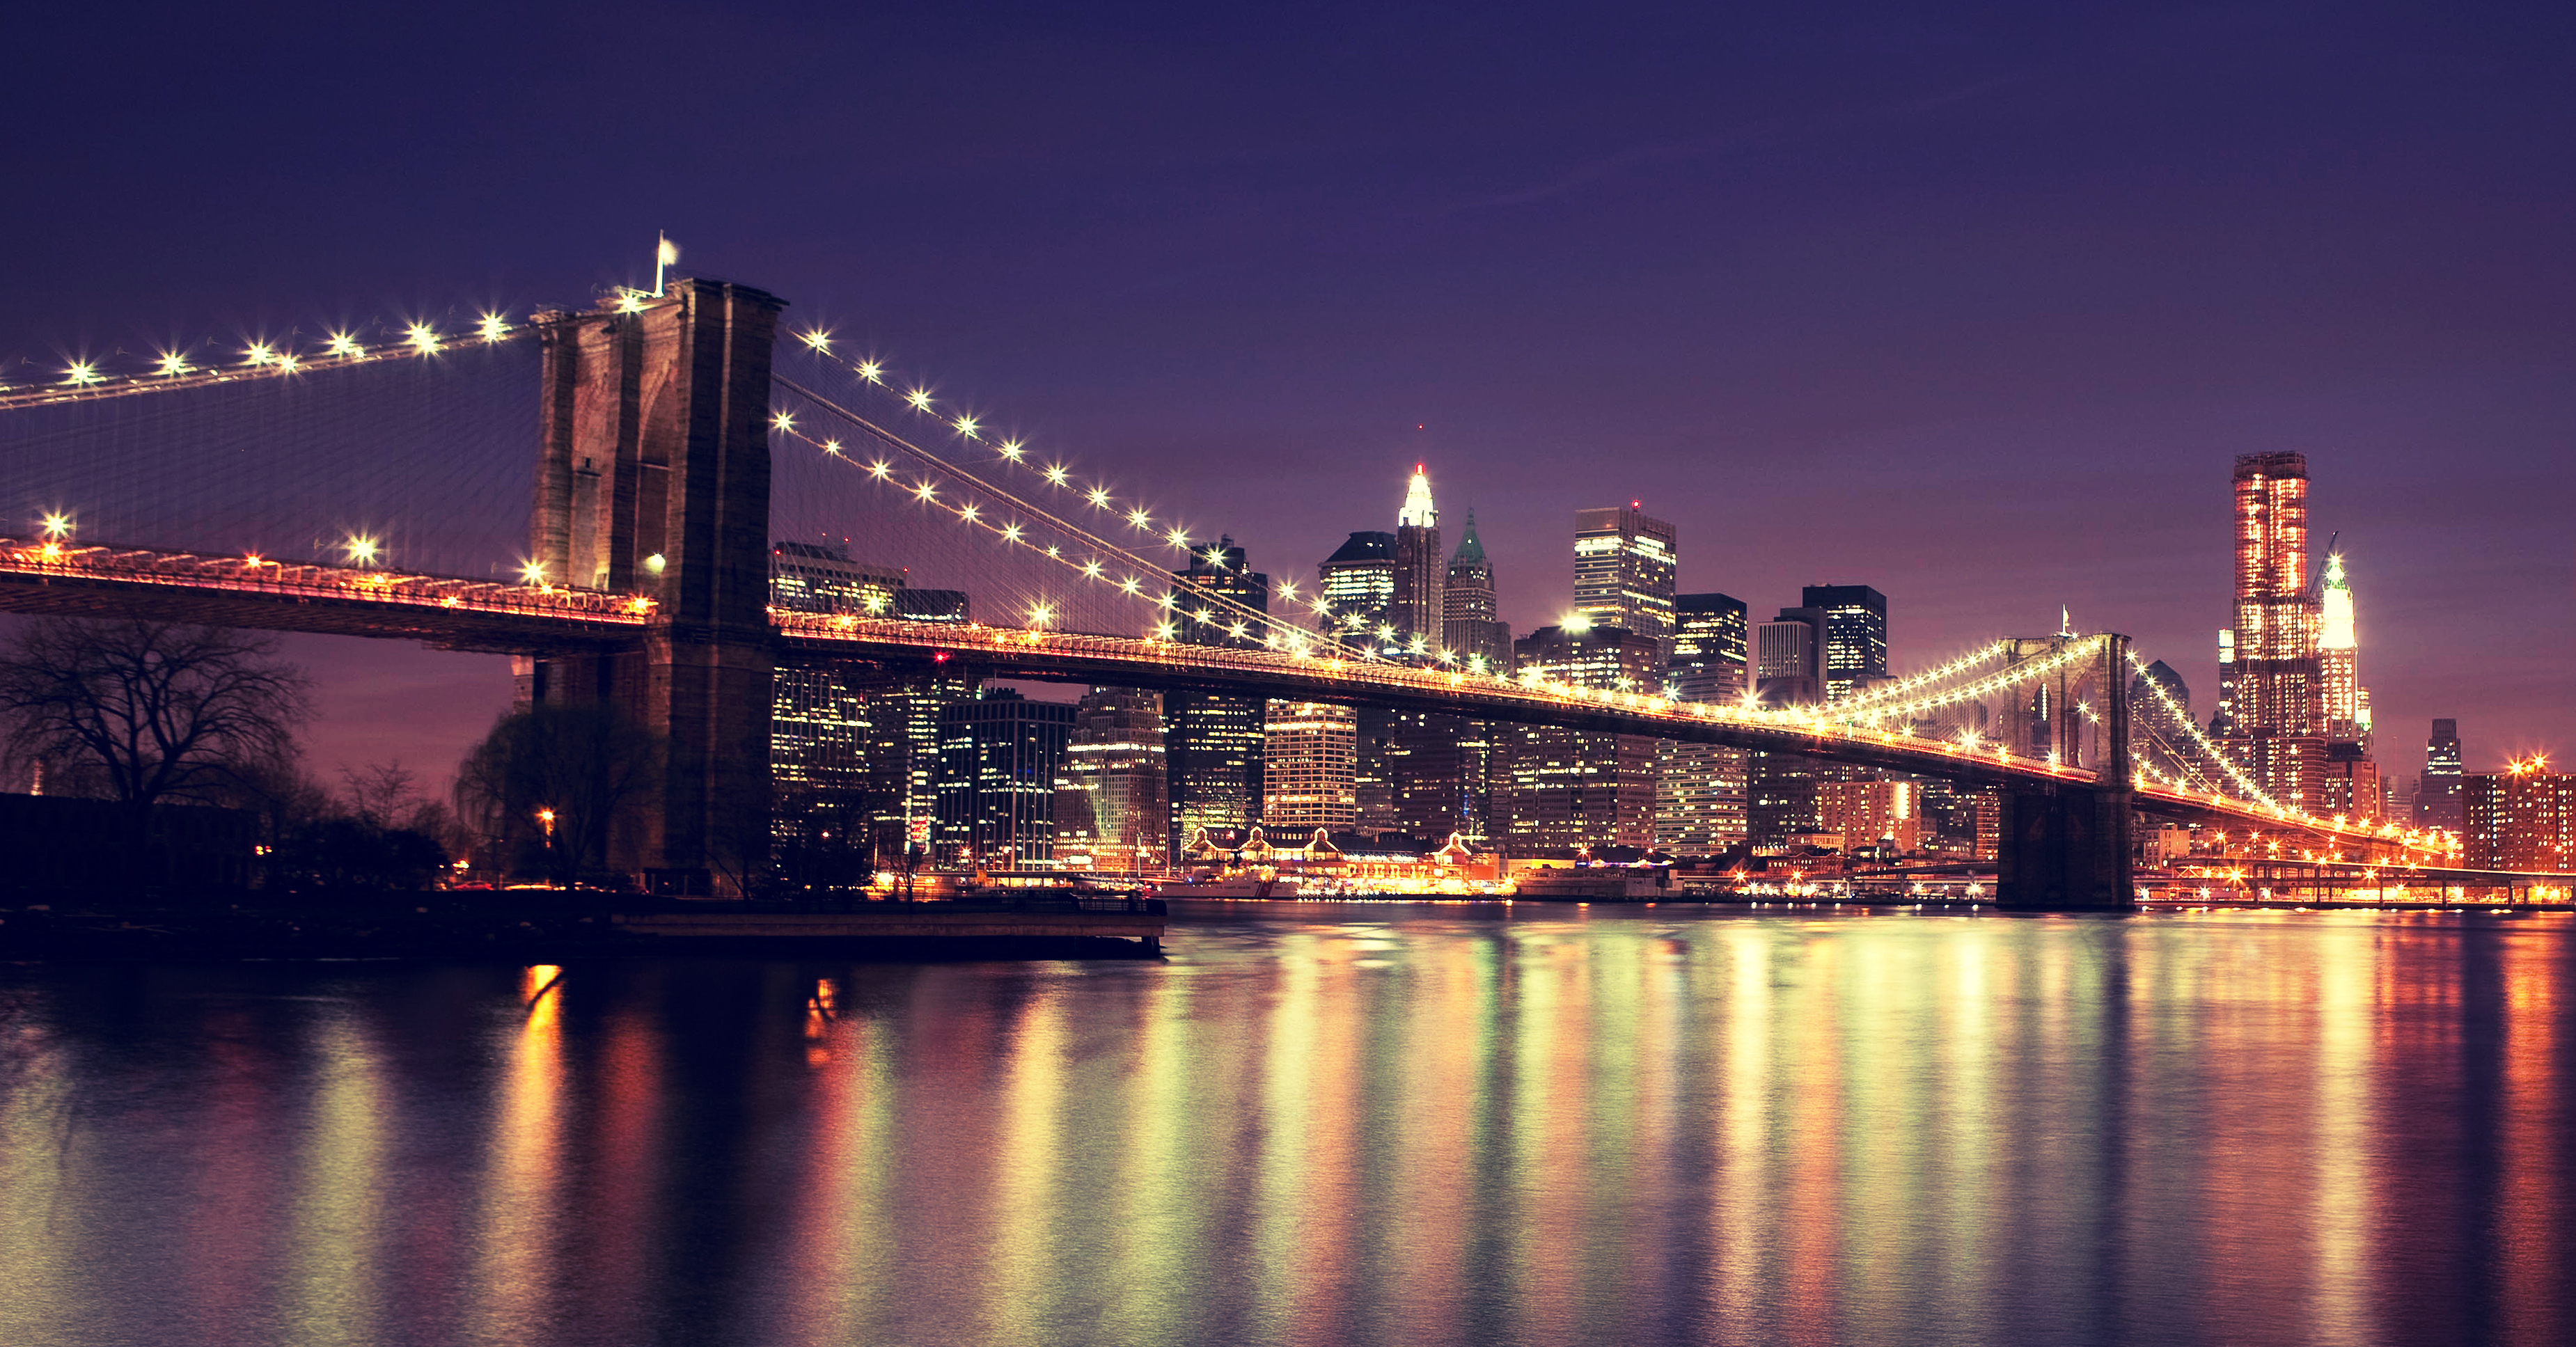 ブルックリン橋の壁紙,都市の景観,市,首都圏,スカイライン,反射